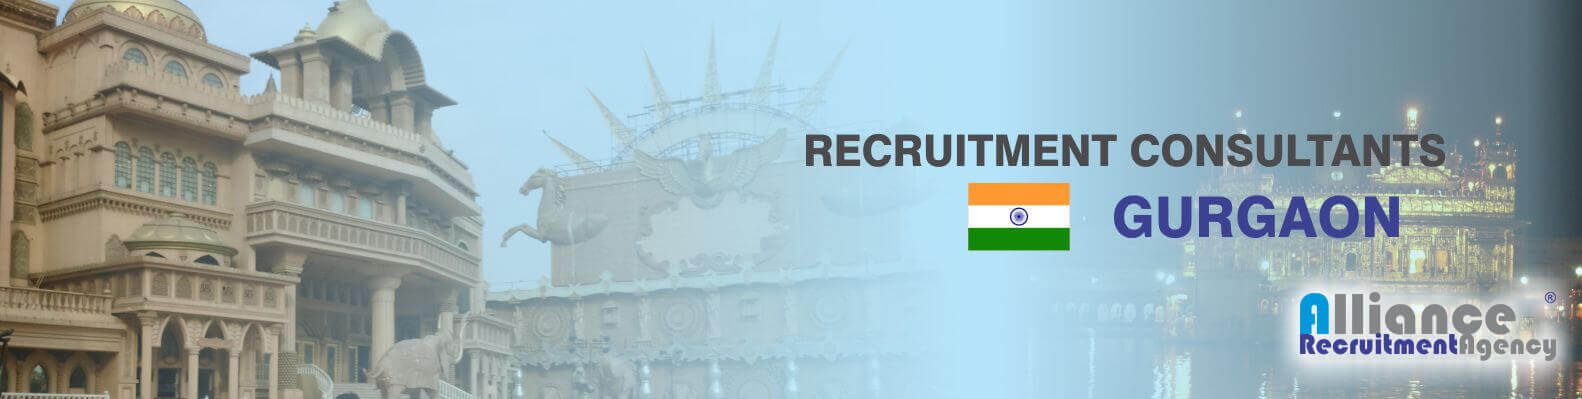 Recruitment Consultants Gurgaon